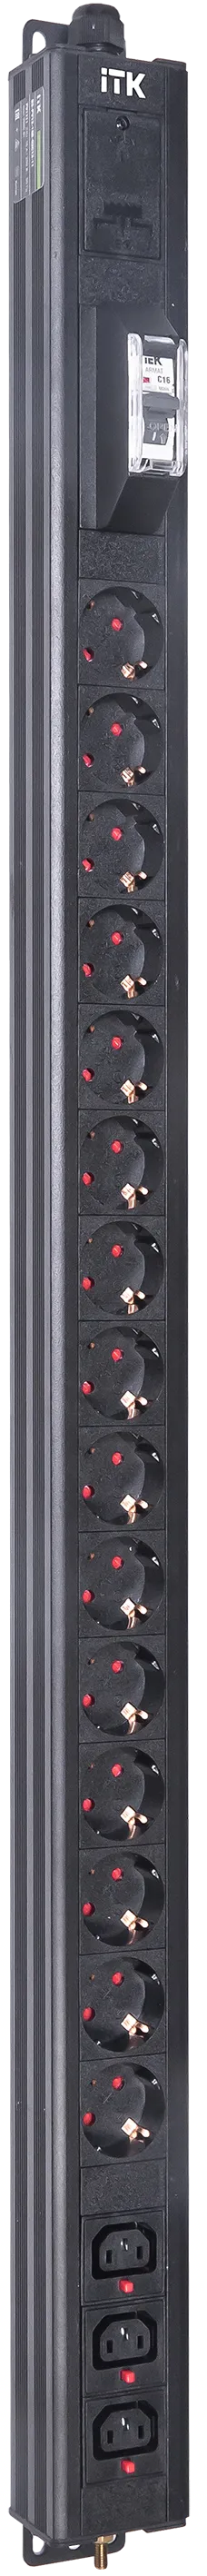 Вертикальный комбинированный блок распределения питания PDU ITK включает в себя розетки двух типов: 15 розеток Schuko и 3 розетки C13 – что позволяет подключать с их помощью различное оборудование. PDU ITK изготавливается из высококачественных термостойких материалов и пластмасс, оснащается 2,6 метровым кабелем электропитания с вилкой Schuko. PDU ITK прекрасно справляется с задачей по электроснабжению сетевого оборудования в шкафах и стойках, а также с требованием защиты от токов короткого замыкания и перенапряжения. PDU ITK соответствует российским и международным стандартам качества и устанавливается с помощью кронштейнов, при этом положение кронштейнов можно менять, либо безынструментальным методом при помощи монтажных штифтов.